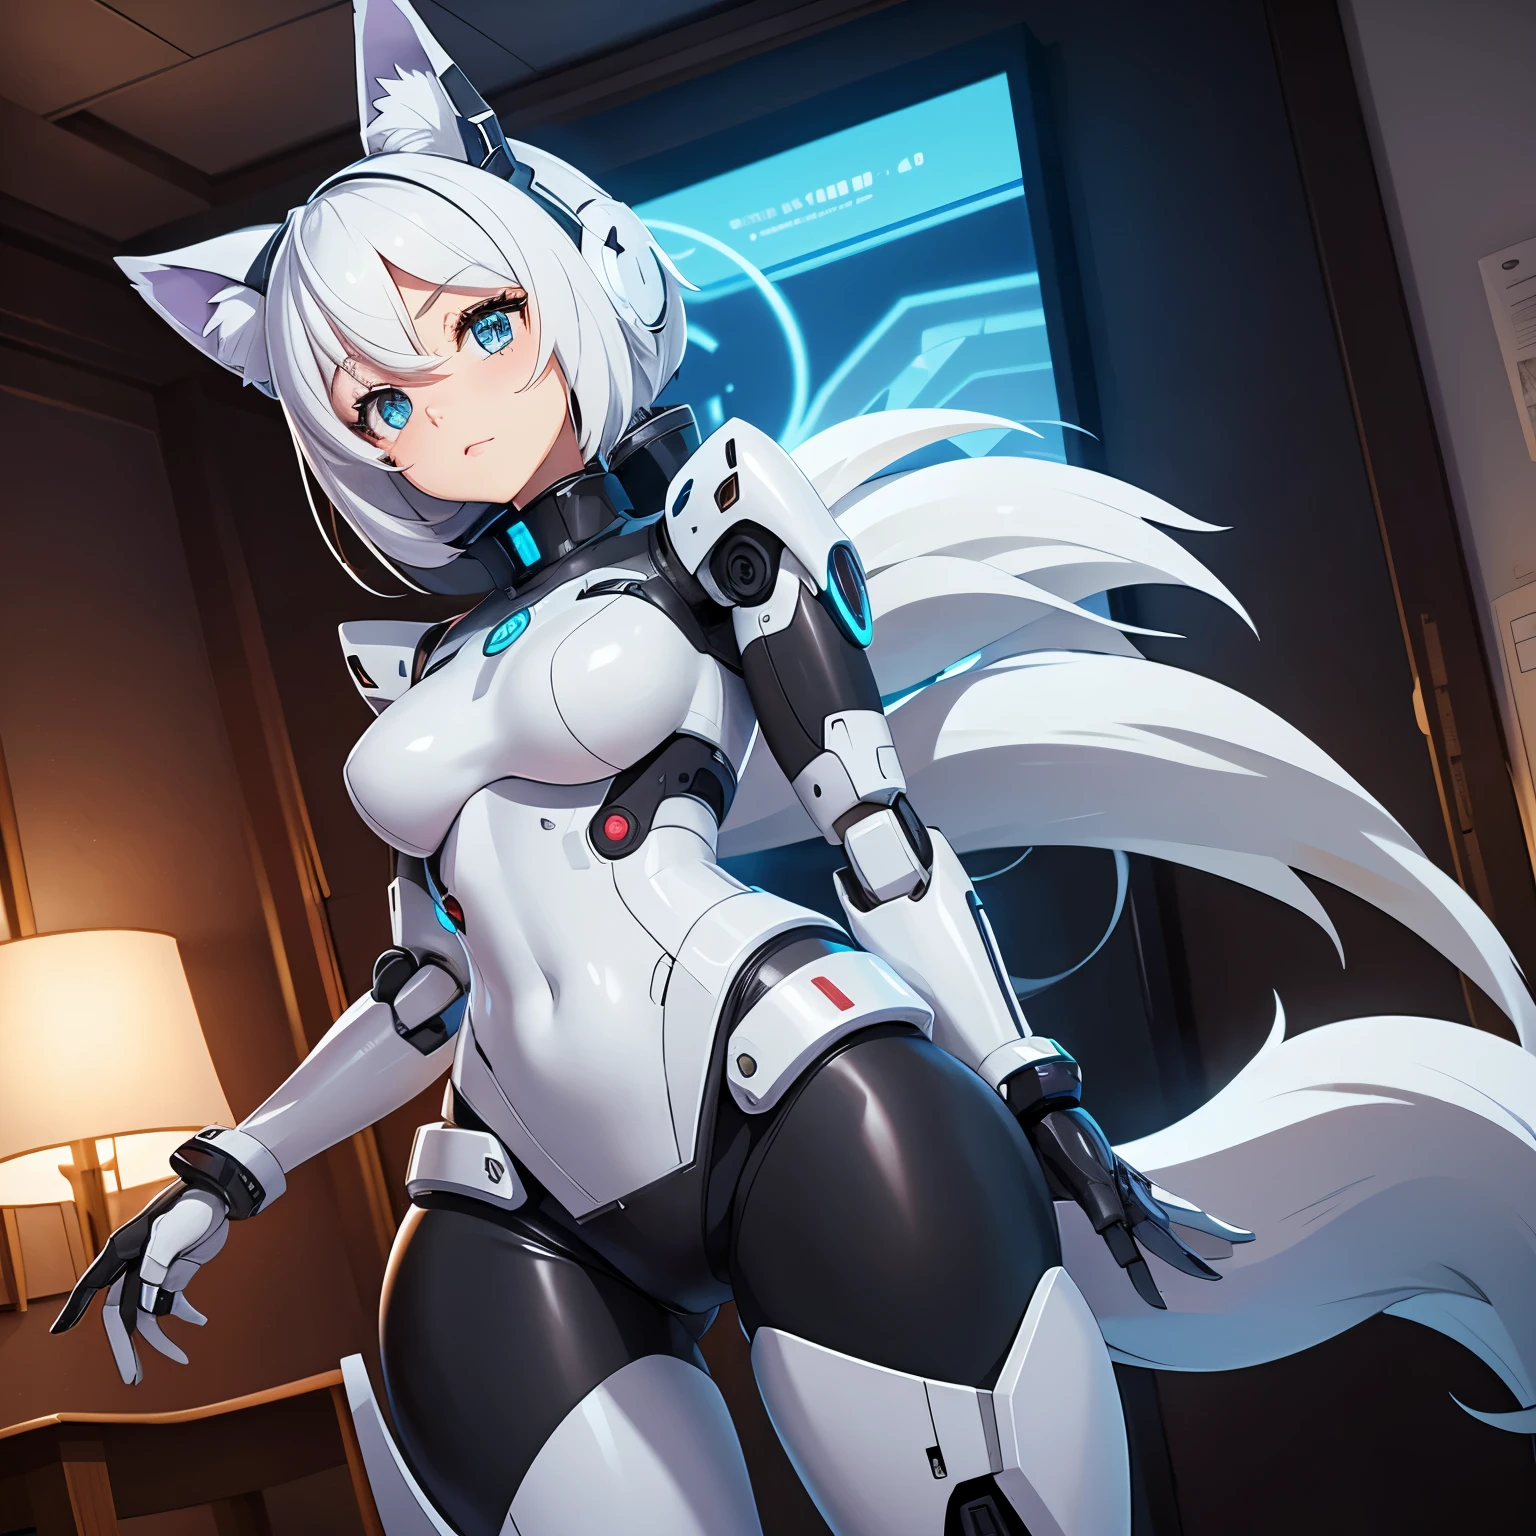 Imagen de estilo anime de una chica robot Android que tiene un cuerpo robótico., esta en ropa interior y tiene orejas de lobo y cola que esta en una habitacion 